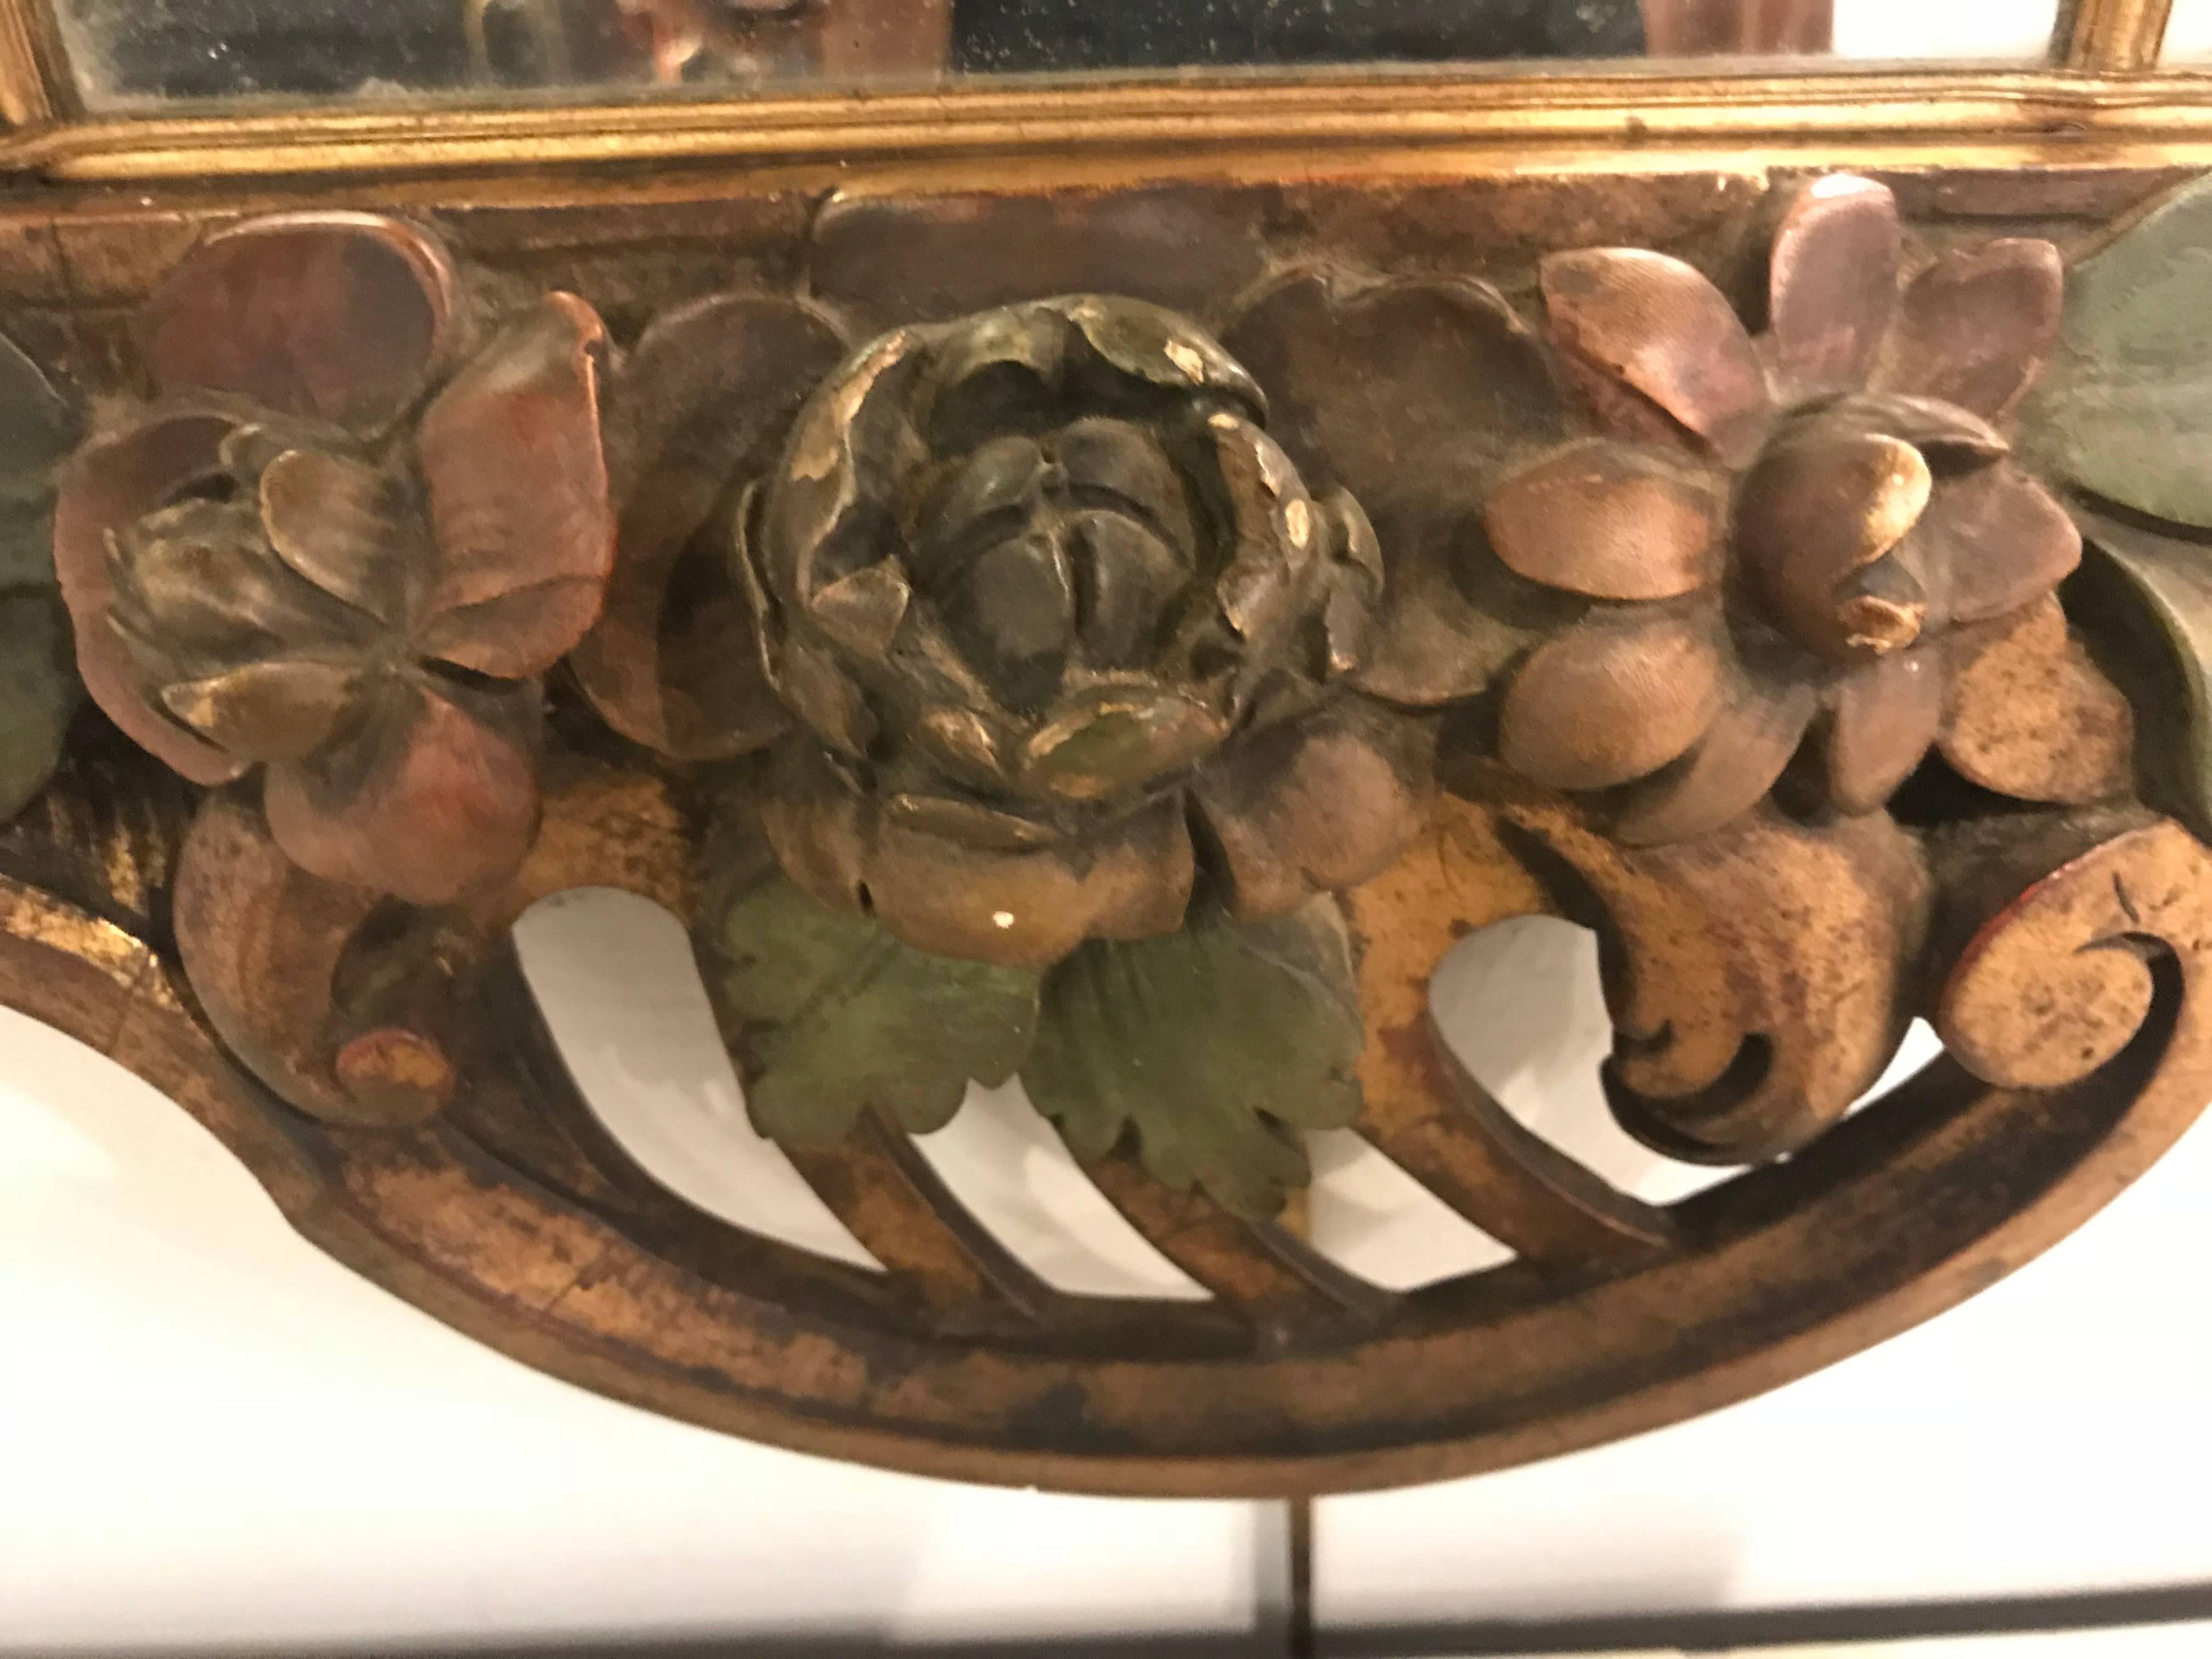 Paire de consoles murales / miroirs de style Louis XVI du 19e siècle, peut-être du début du 20e siècle. Ces miroirs sont merveilleusement sculptés et peints. Cette paire palatiale de miroirs en bois et gesso polychrome est finement décorée de fruits